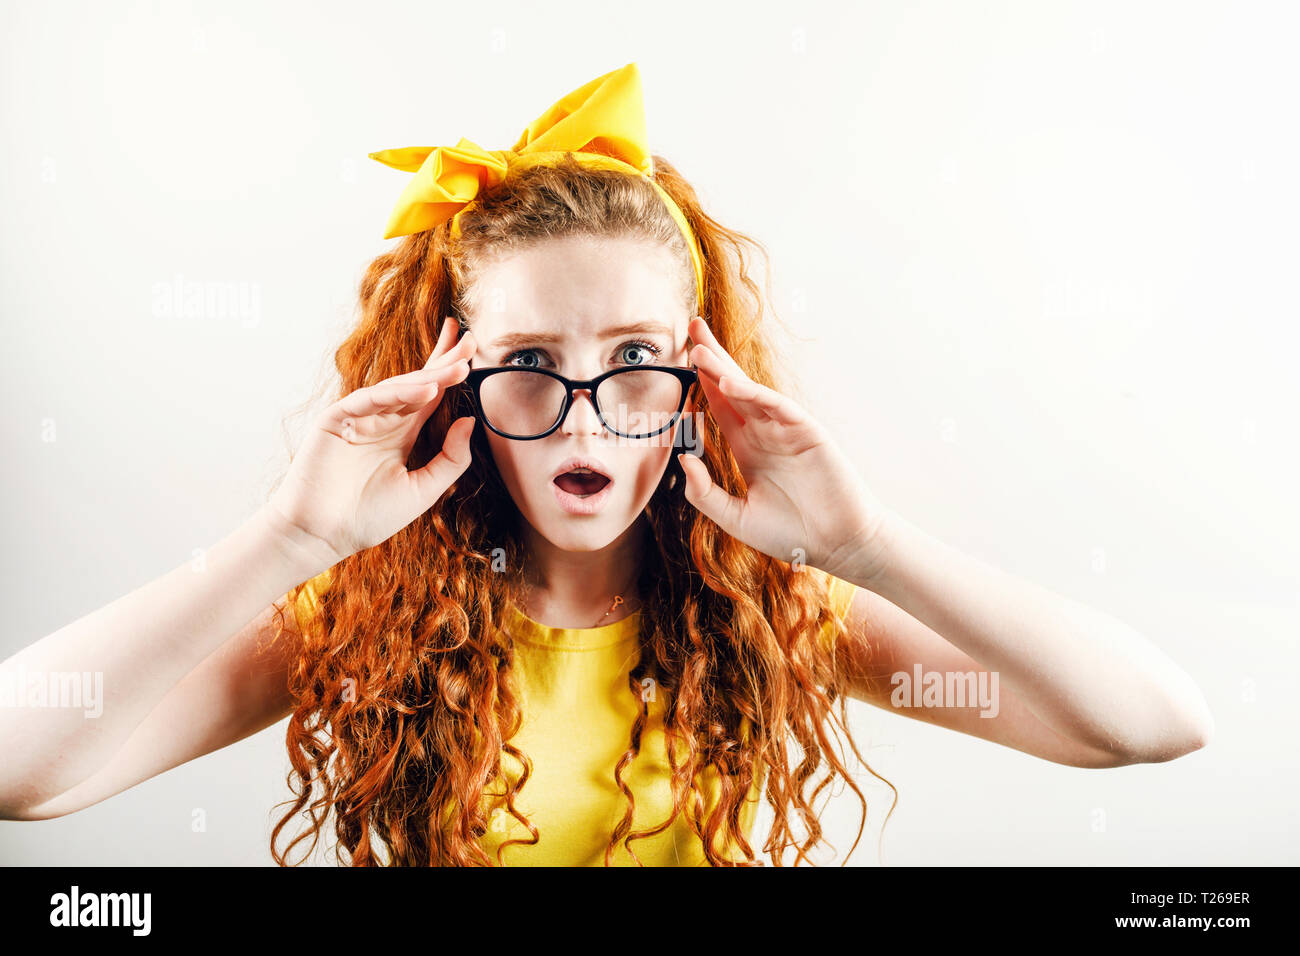 Surpris fille rousse bouclée dans les verres avec un arc jaune sur sa tête portant des T-shirt jaune à la recherche de l'appareil photo avec schoked émotion Banque D'Images